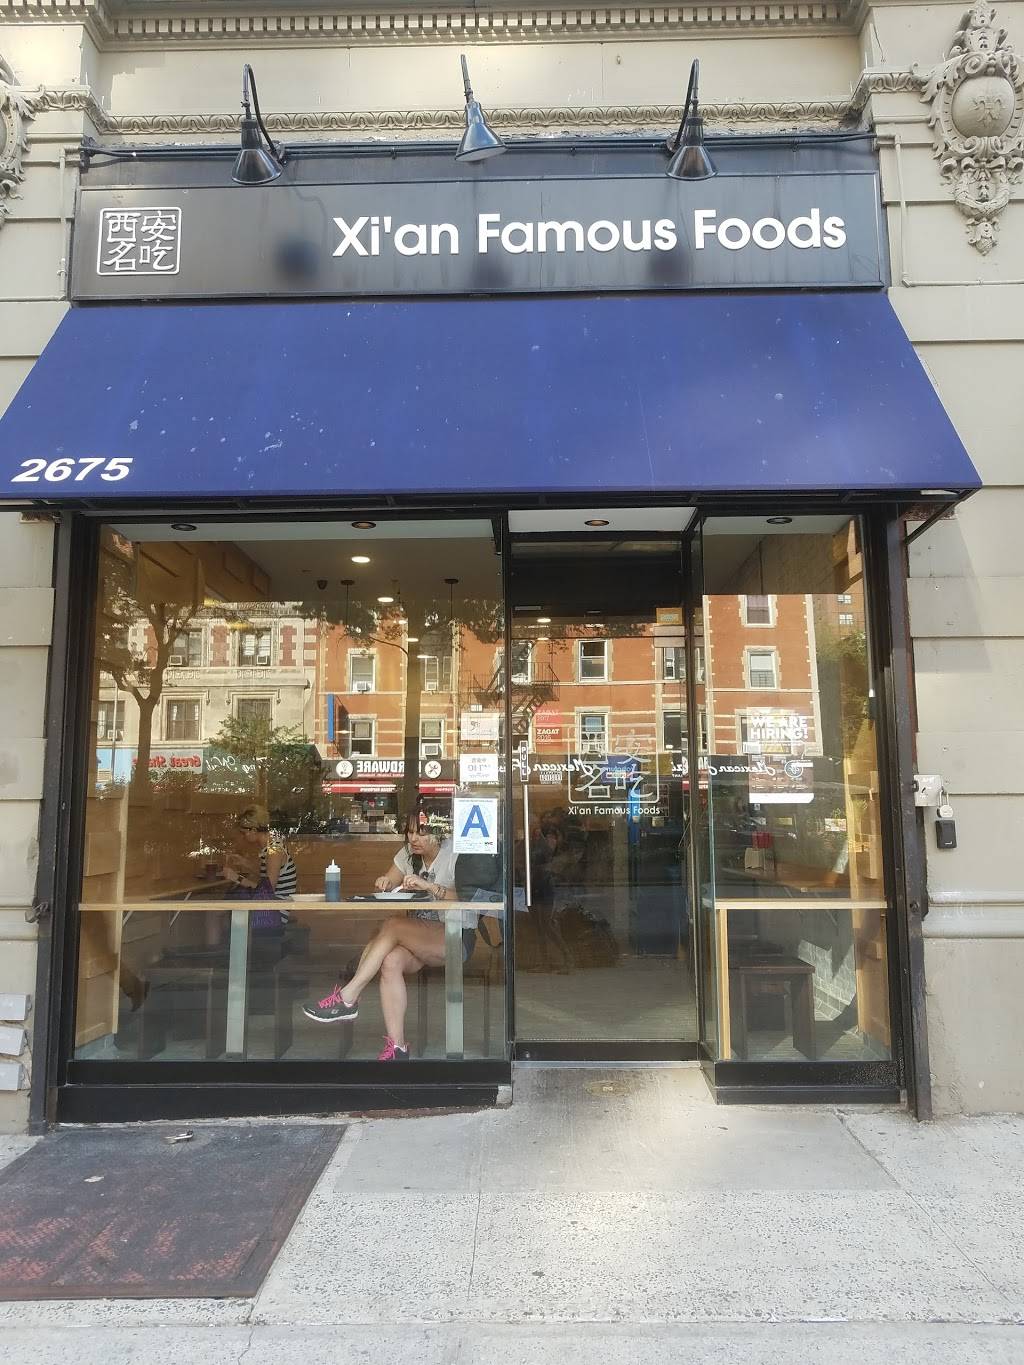 西安名吃 Xian Famous Foods | restaurant | 2675 Broadway, New York, NY 10025, USA | 2127862068 OR +1 212-786-2068